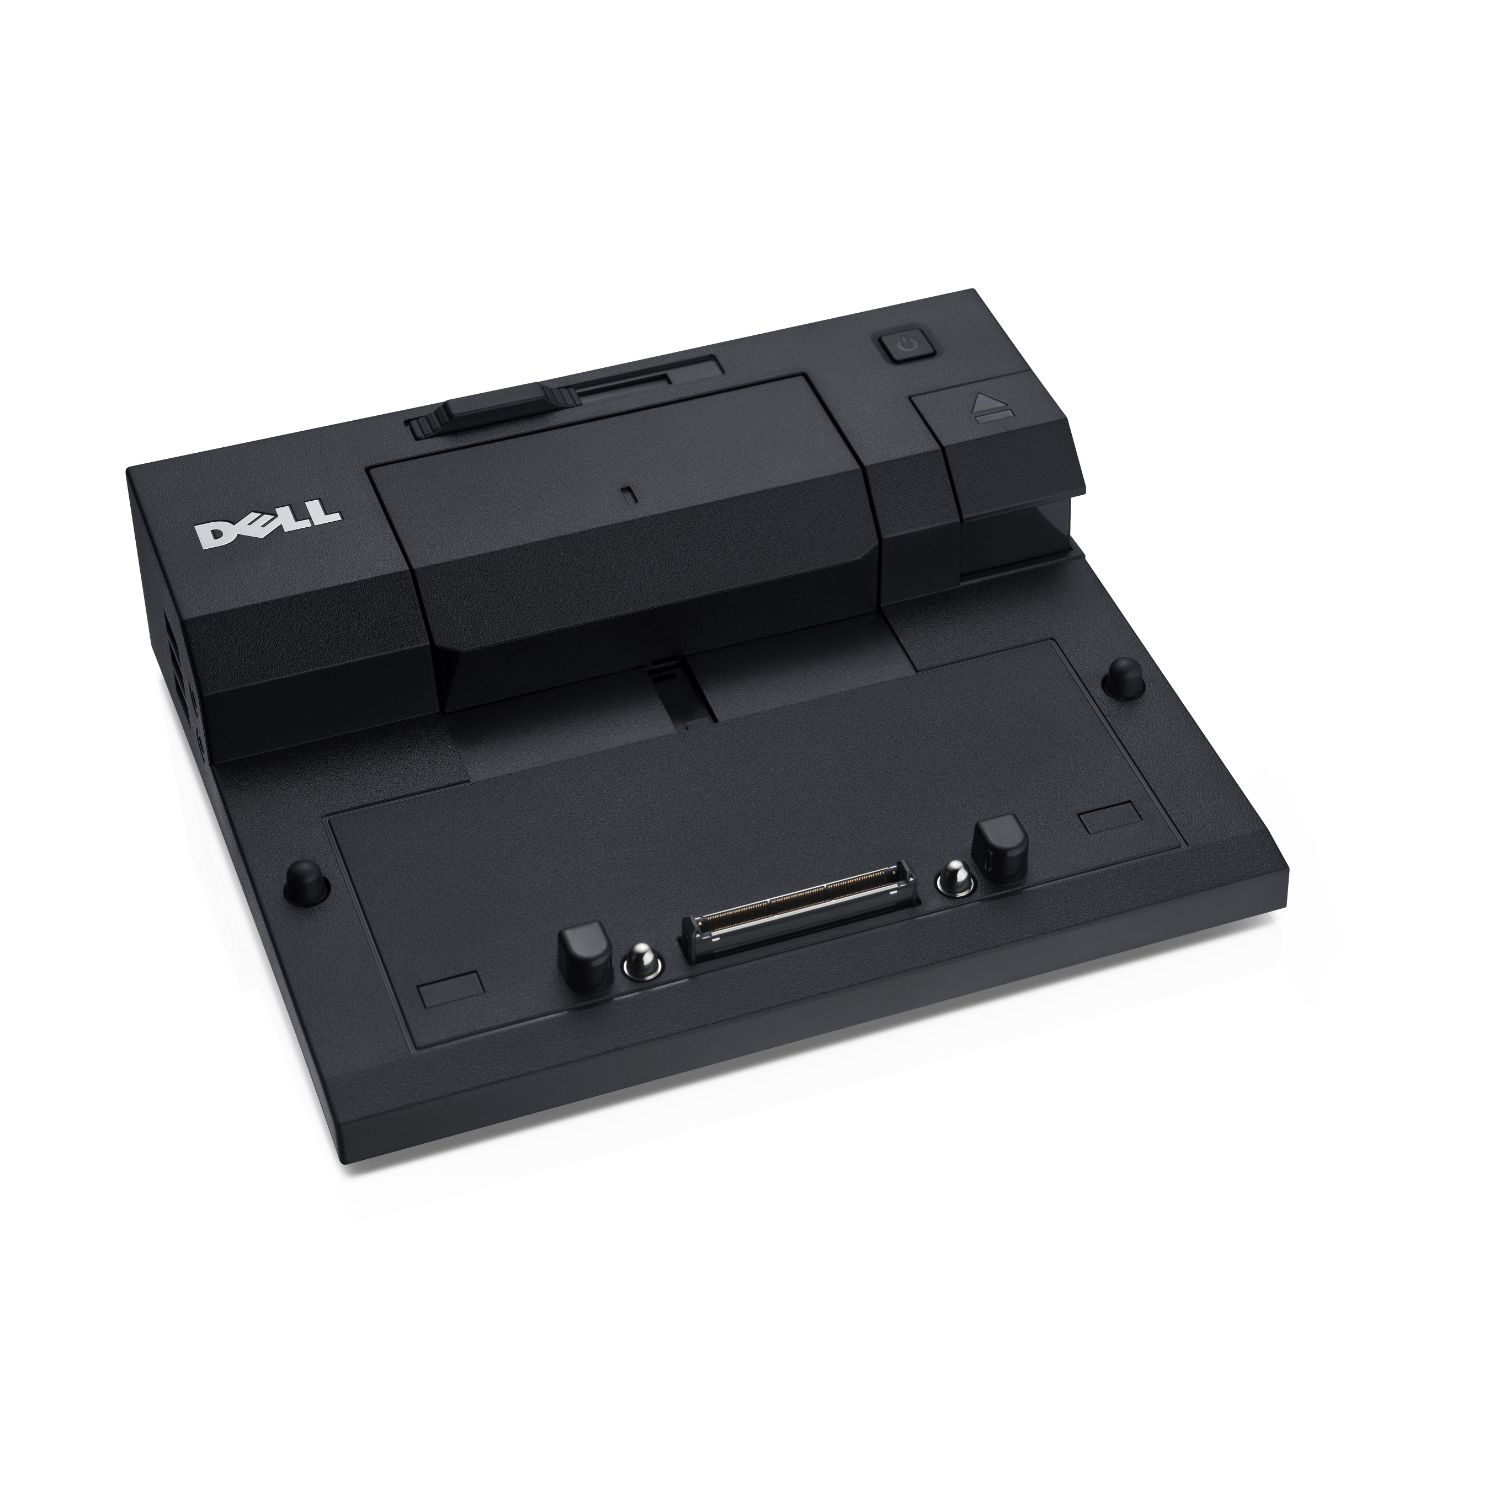 DOC0001A - Dell Simple E-Port II Con USB V3.0 (DOC0001A)